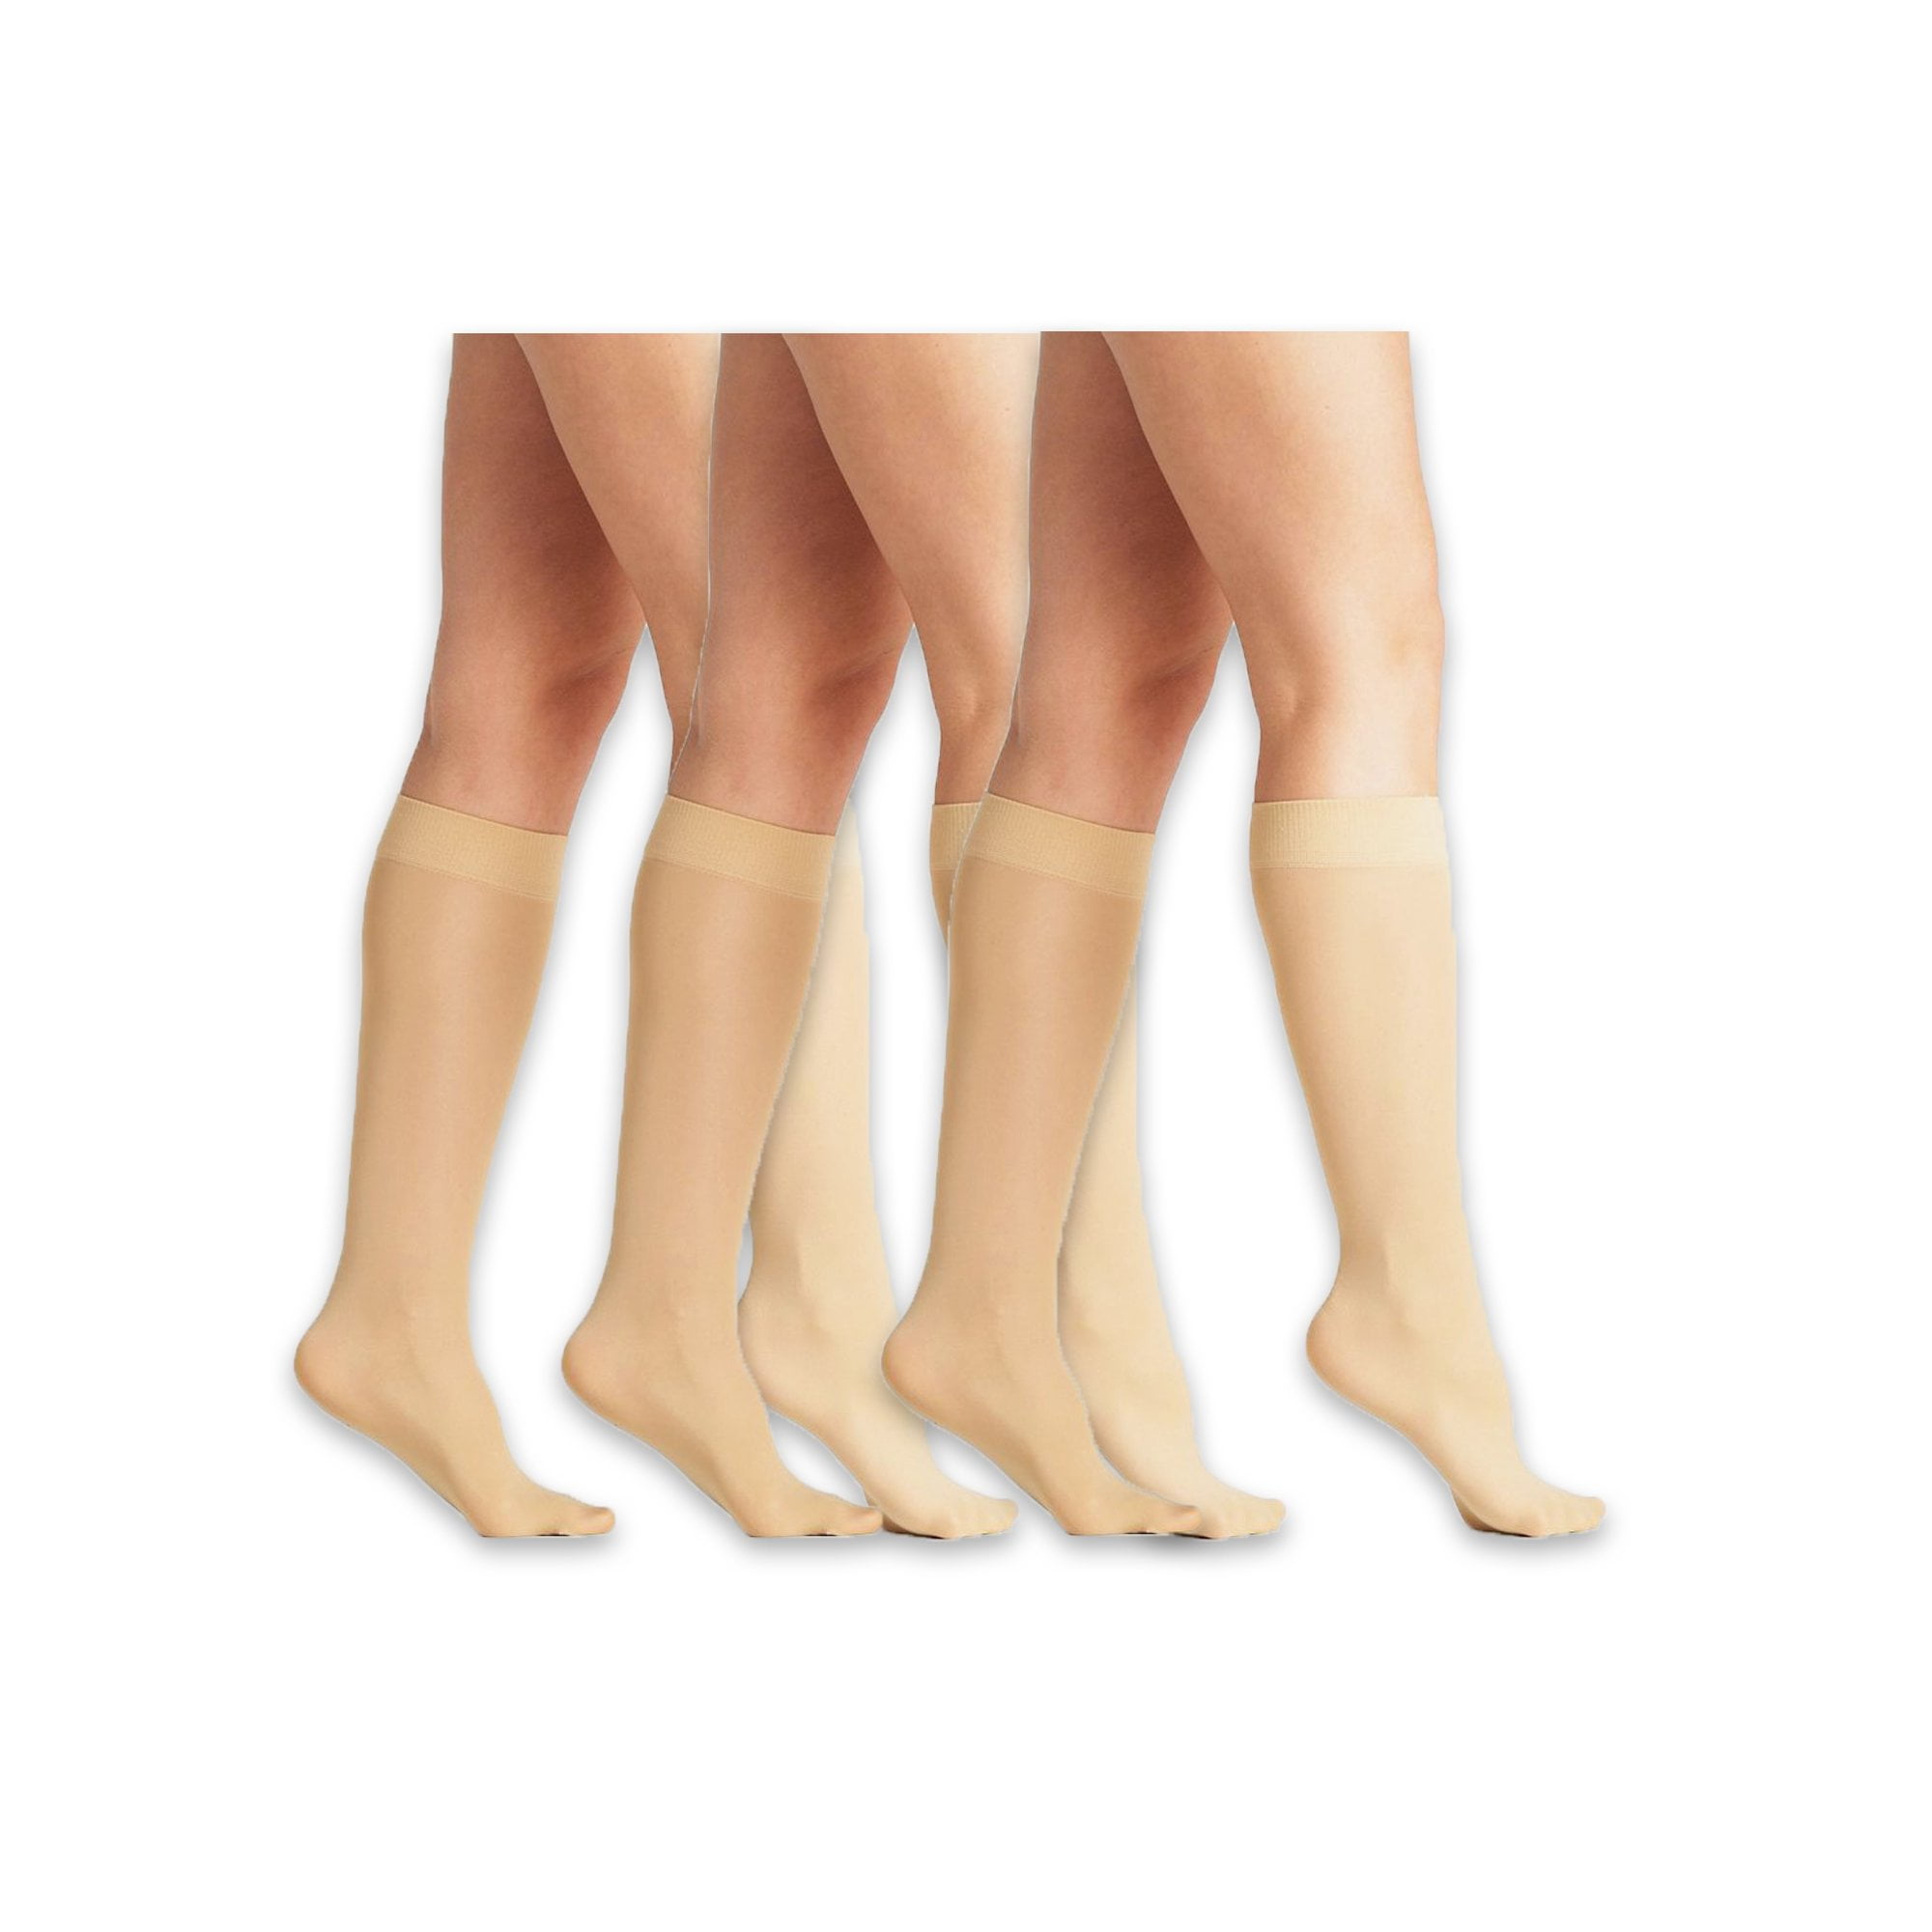 Female legs naked socks - Real Naked Girls